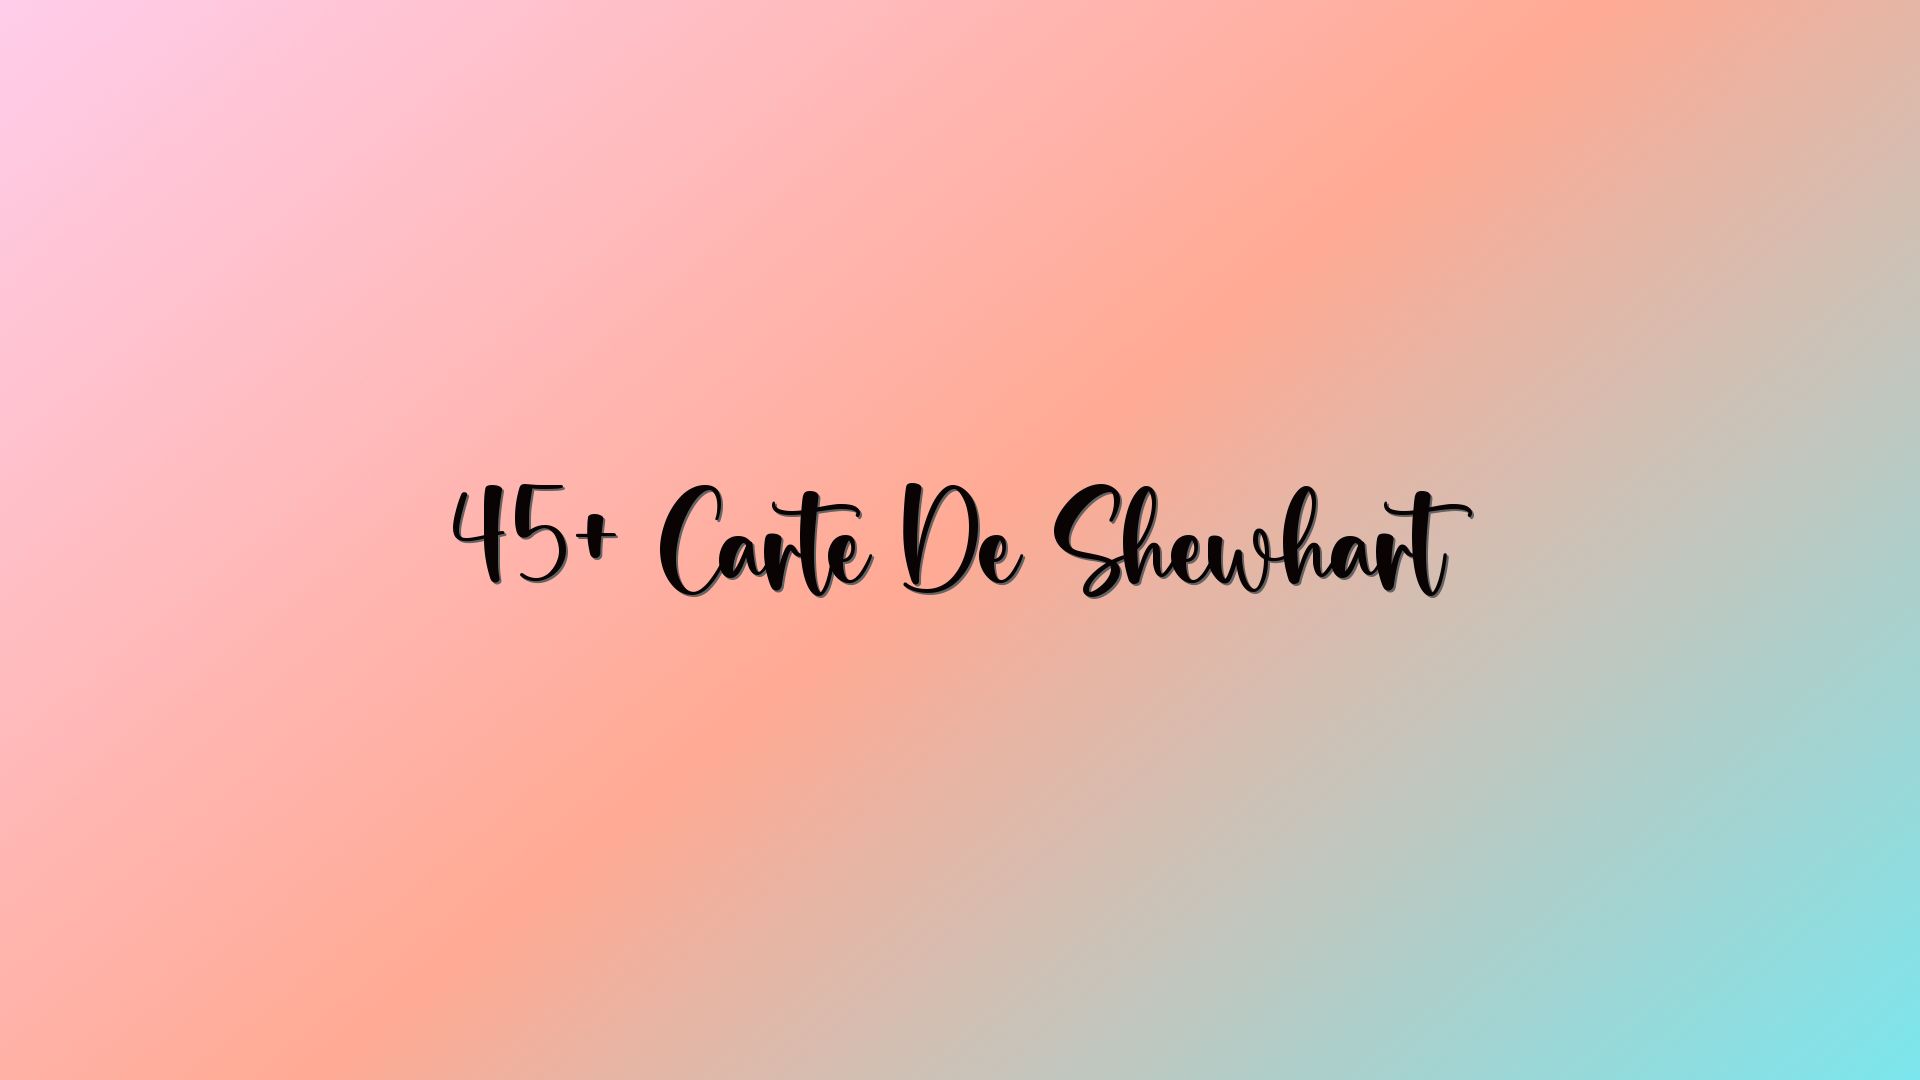 45+ Carte De Shewhart